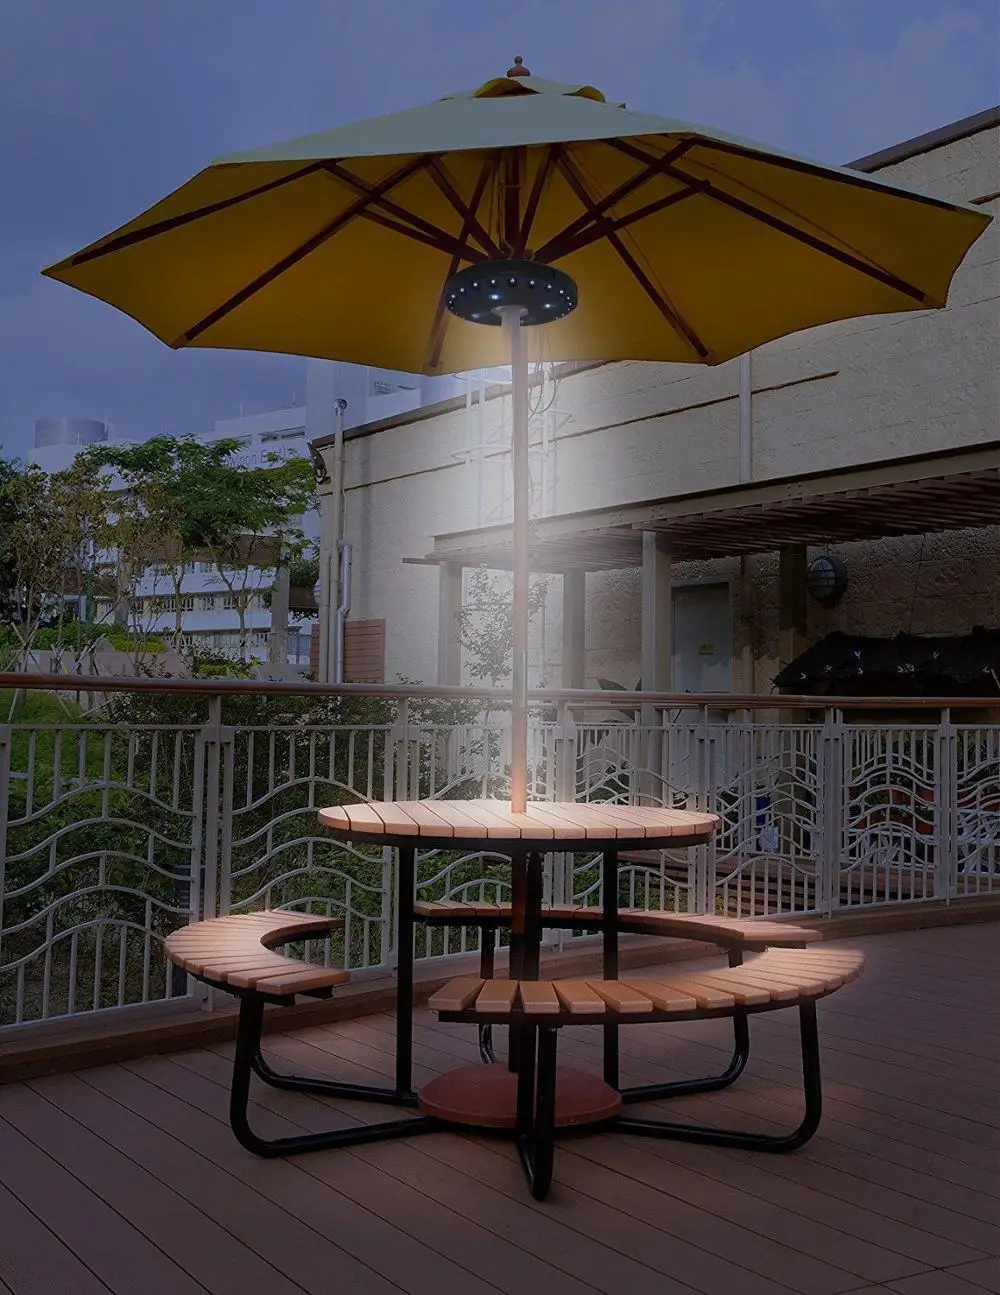 Batterie oder Lampe Garten Regenschirm Sonnenschirm Pfosten 24 LED Zelten Licht